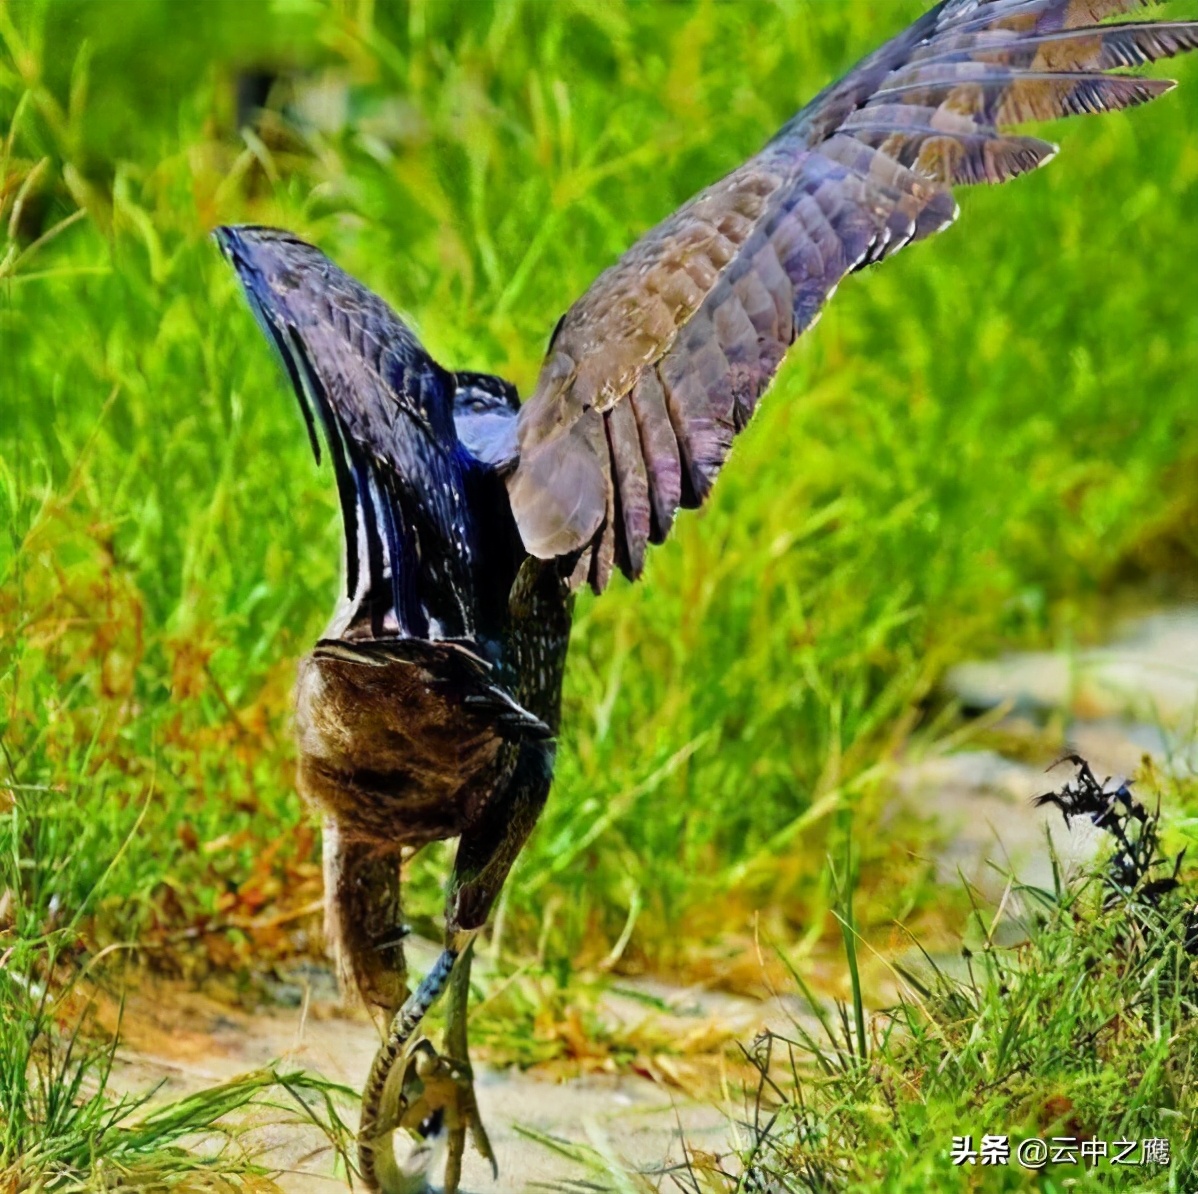 猛禽中的捕蛇高手蛇雕——为什么不怕毒蛇